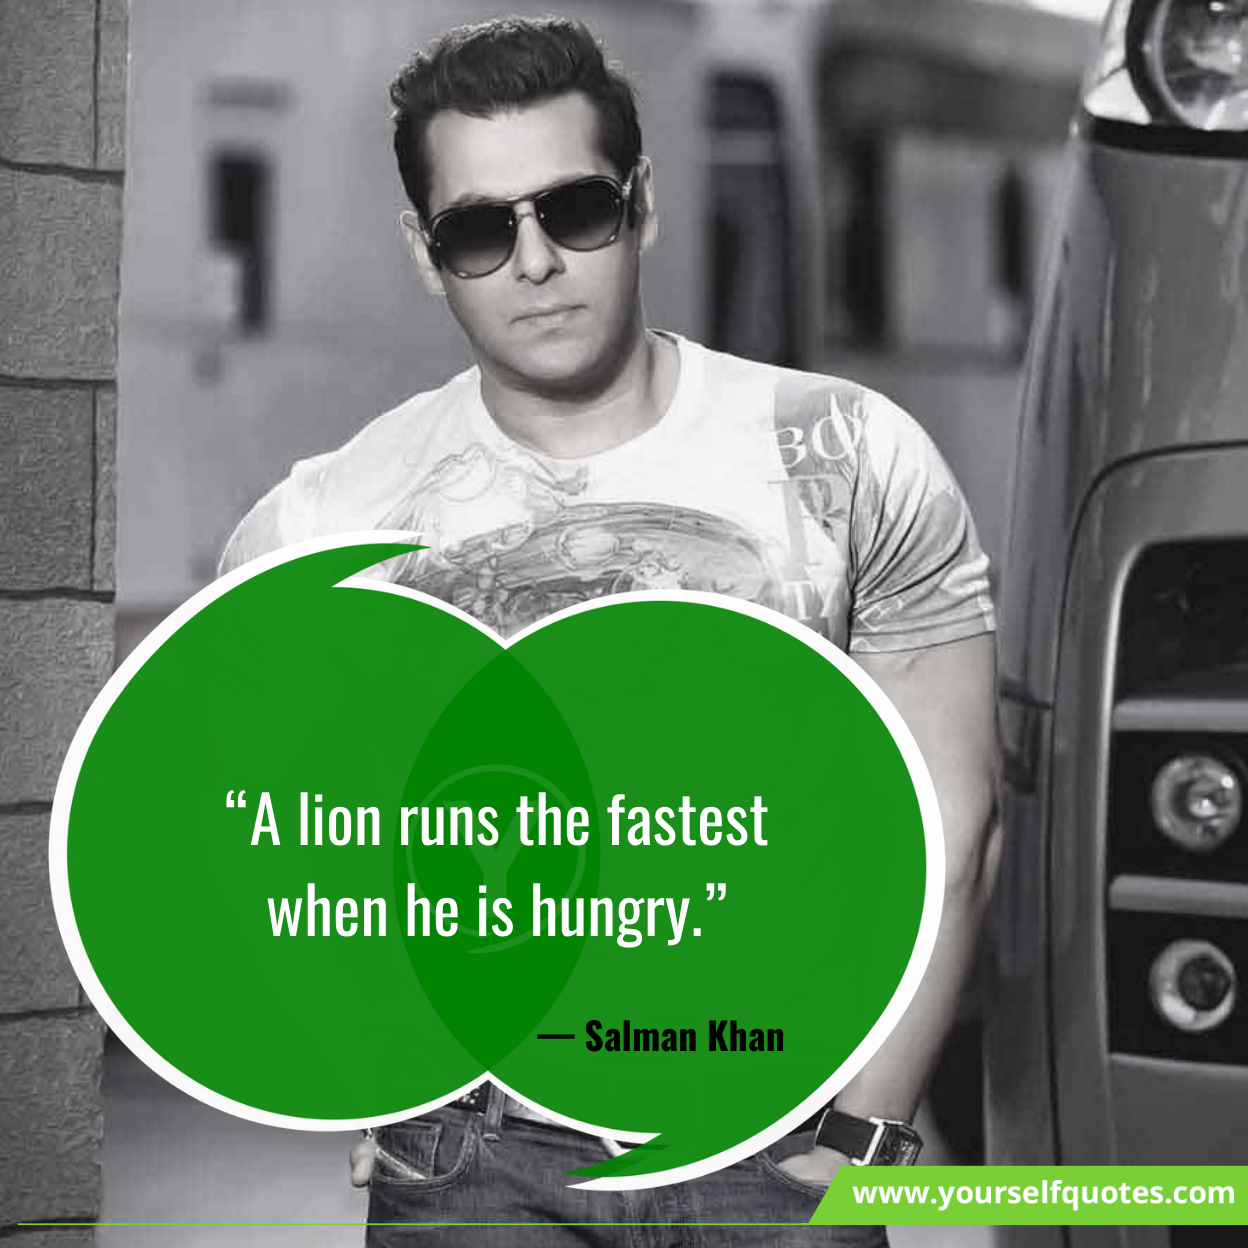 Kutipan Motivasi Salman Khan